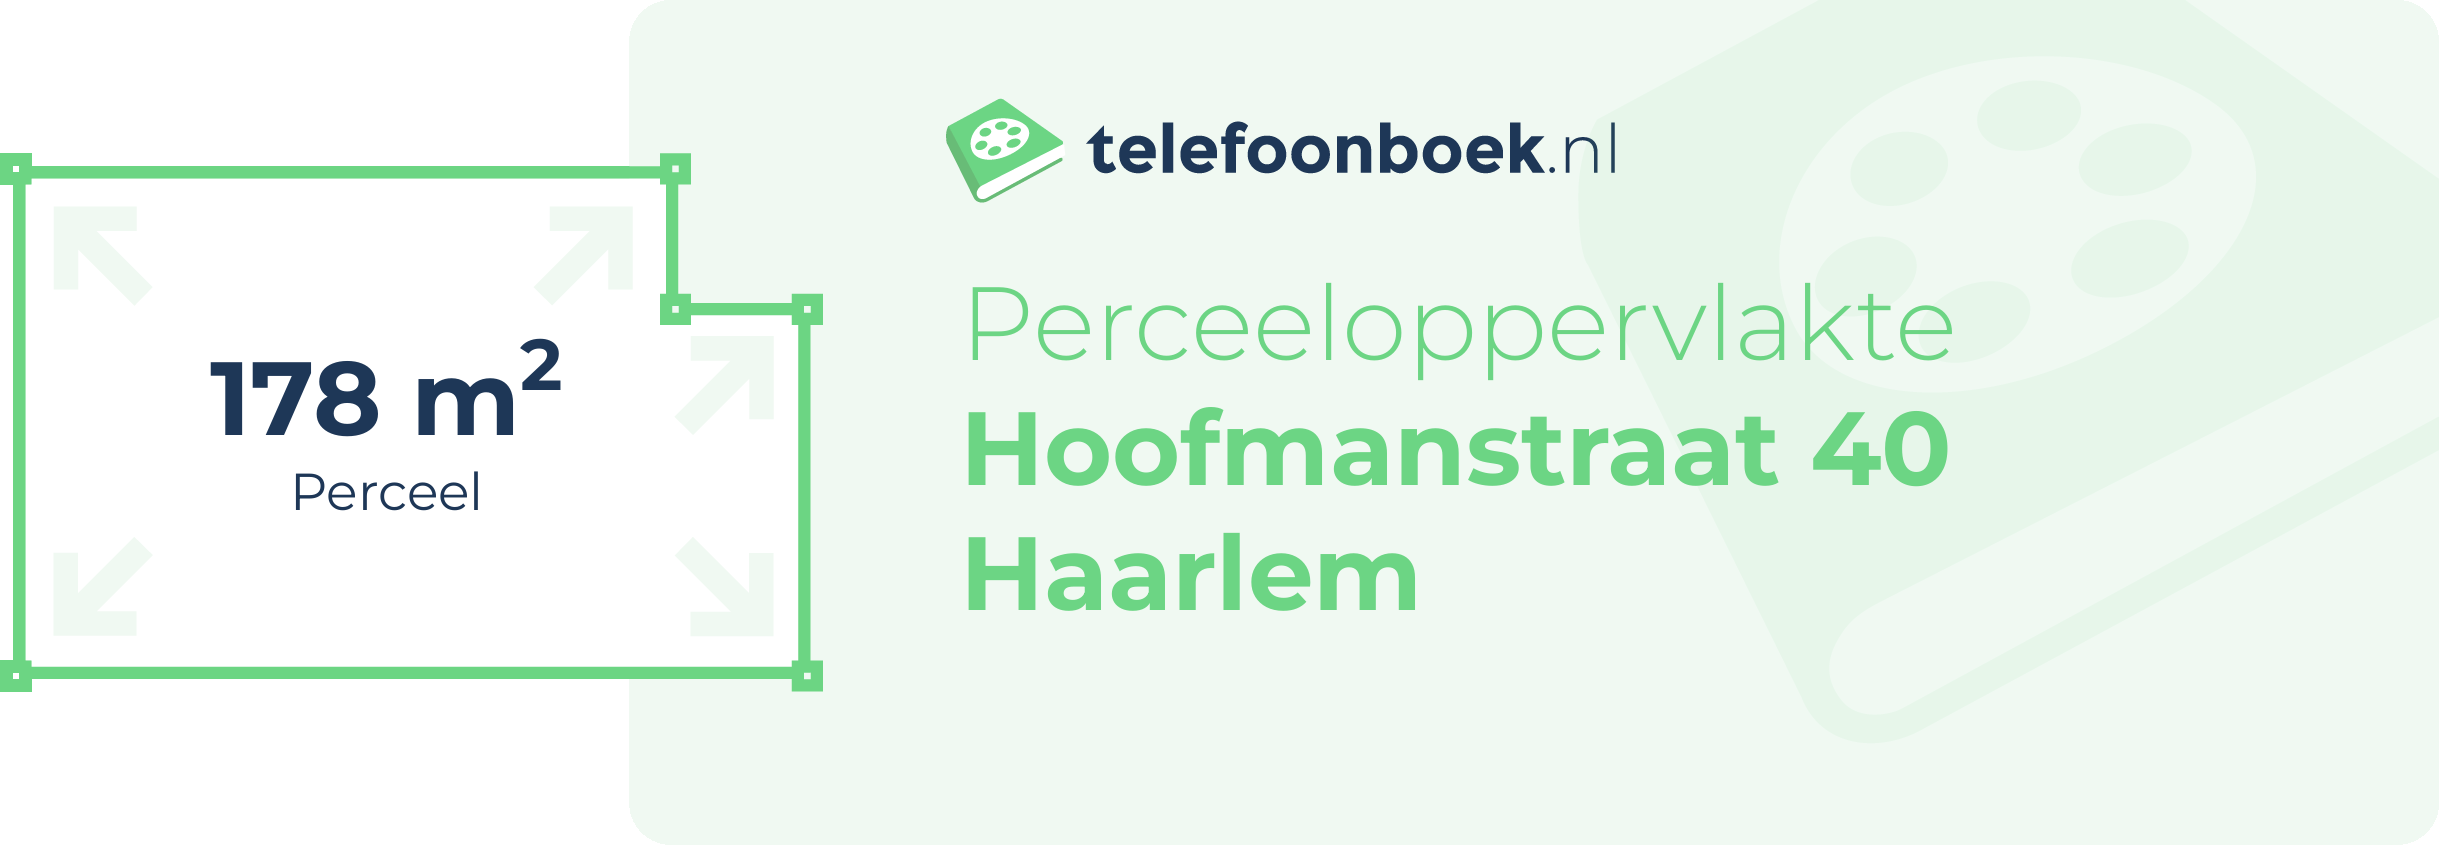 Perceeloppervlakte Hoofmanstraat 40 Haarlem